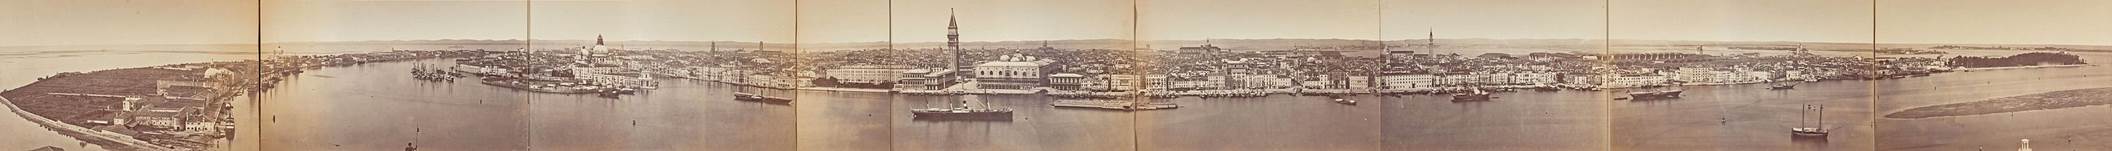 https://upload.media.orgikipedia/commons/thumb/8/81/Panorama_of_Venice_1870s.jpg/3000px-Panorama_of_Venice_1870s.jpg